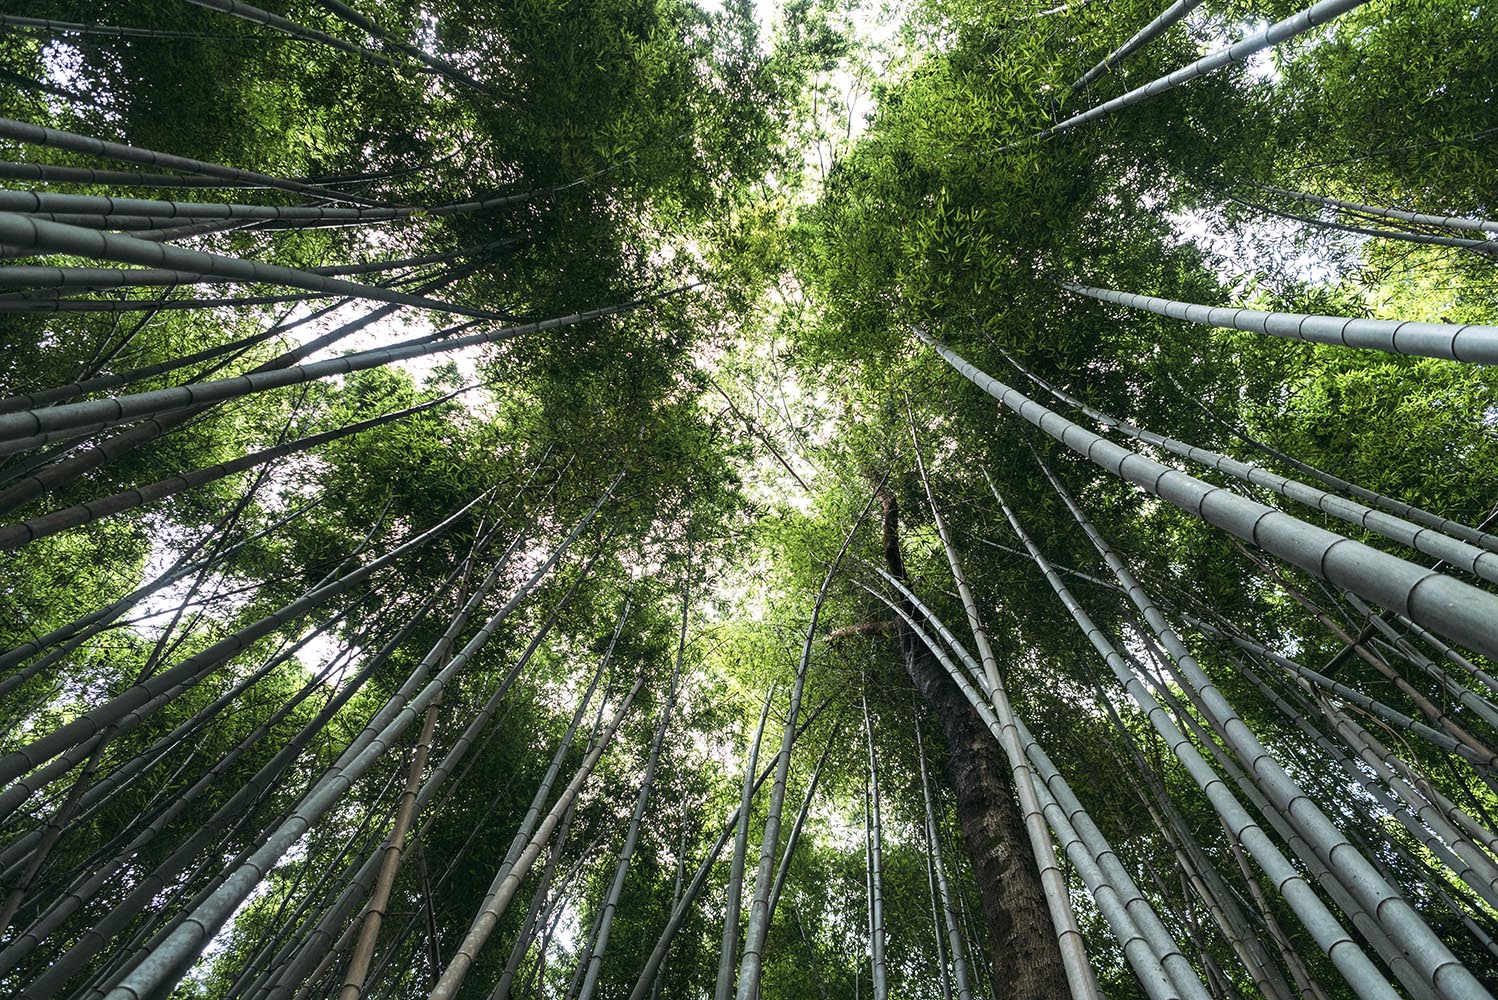 Natural Bamboo Forest, or Sagano Bamboo Forest, in Arashiyama, K